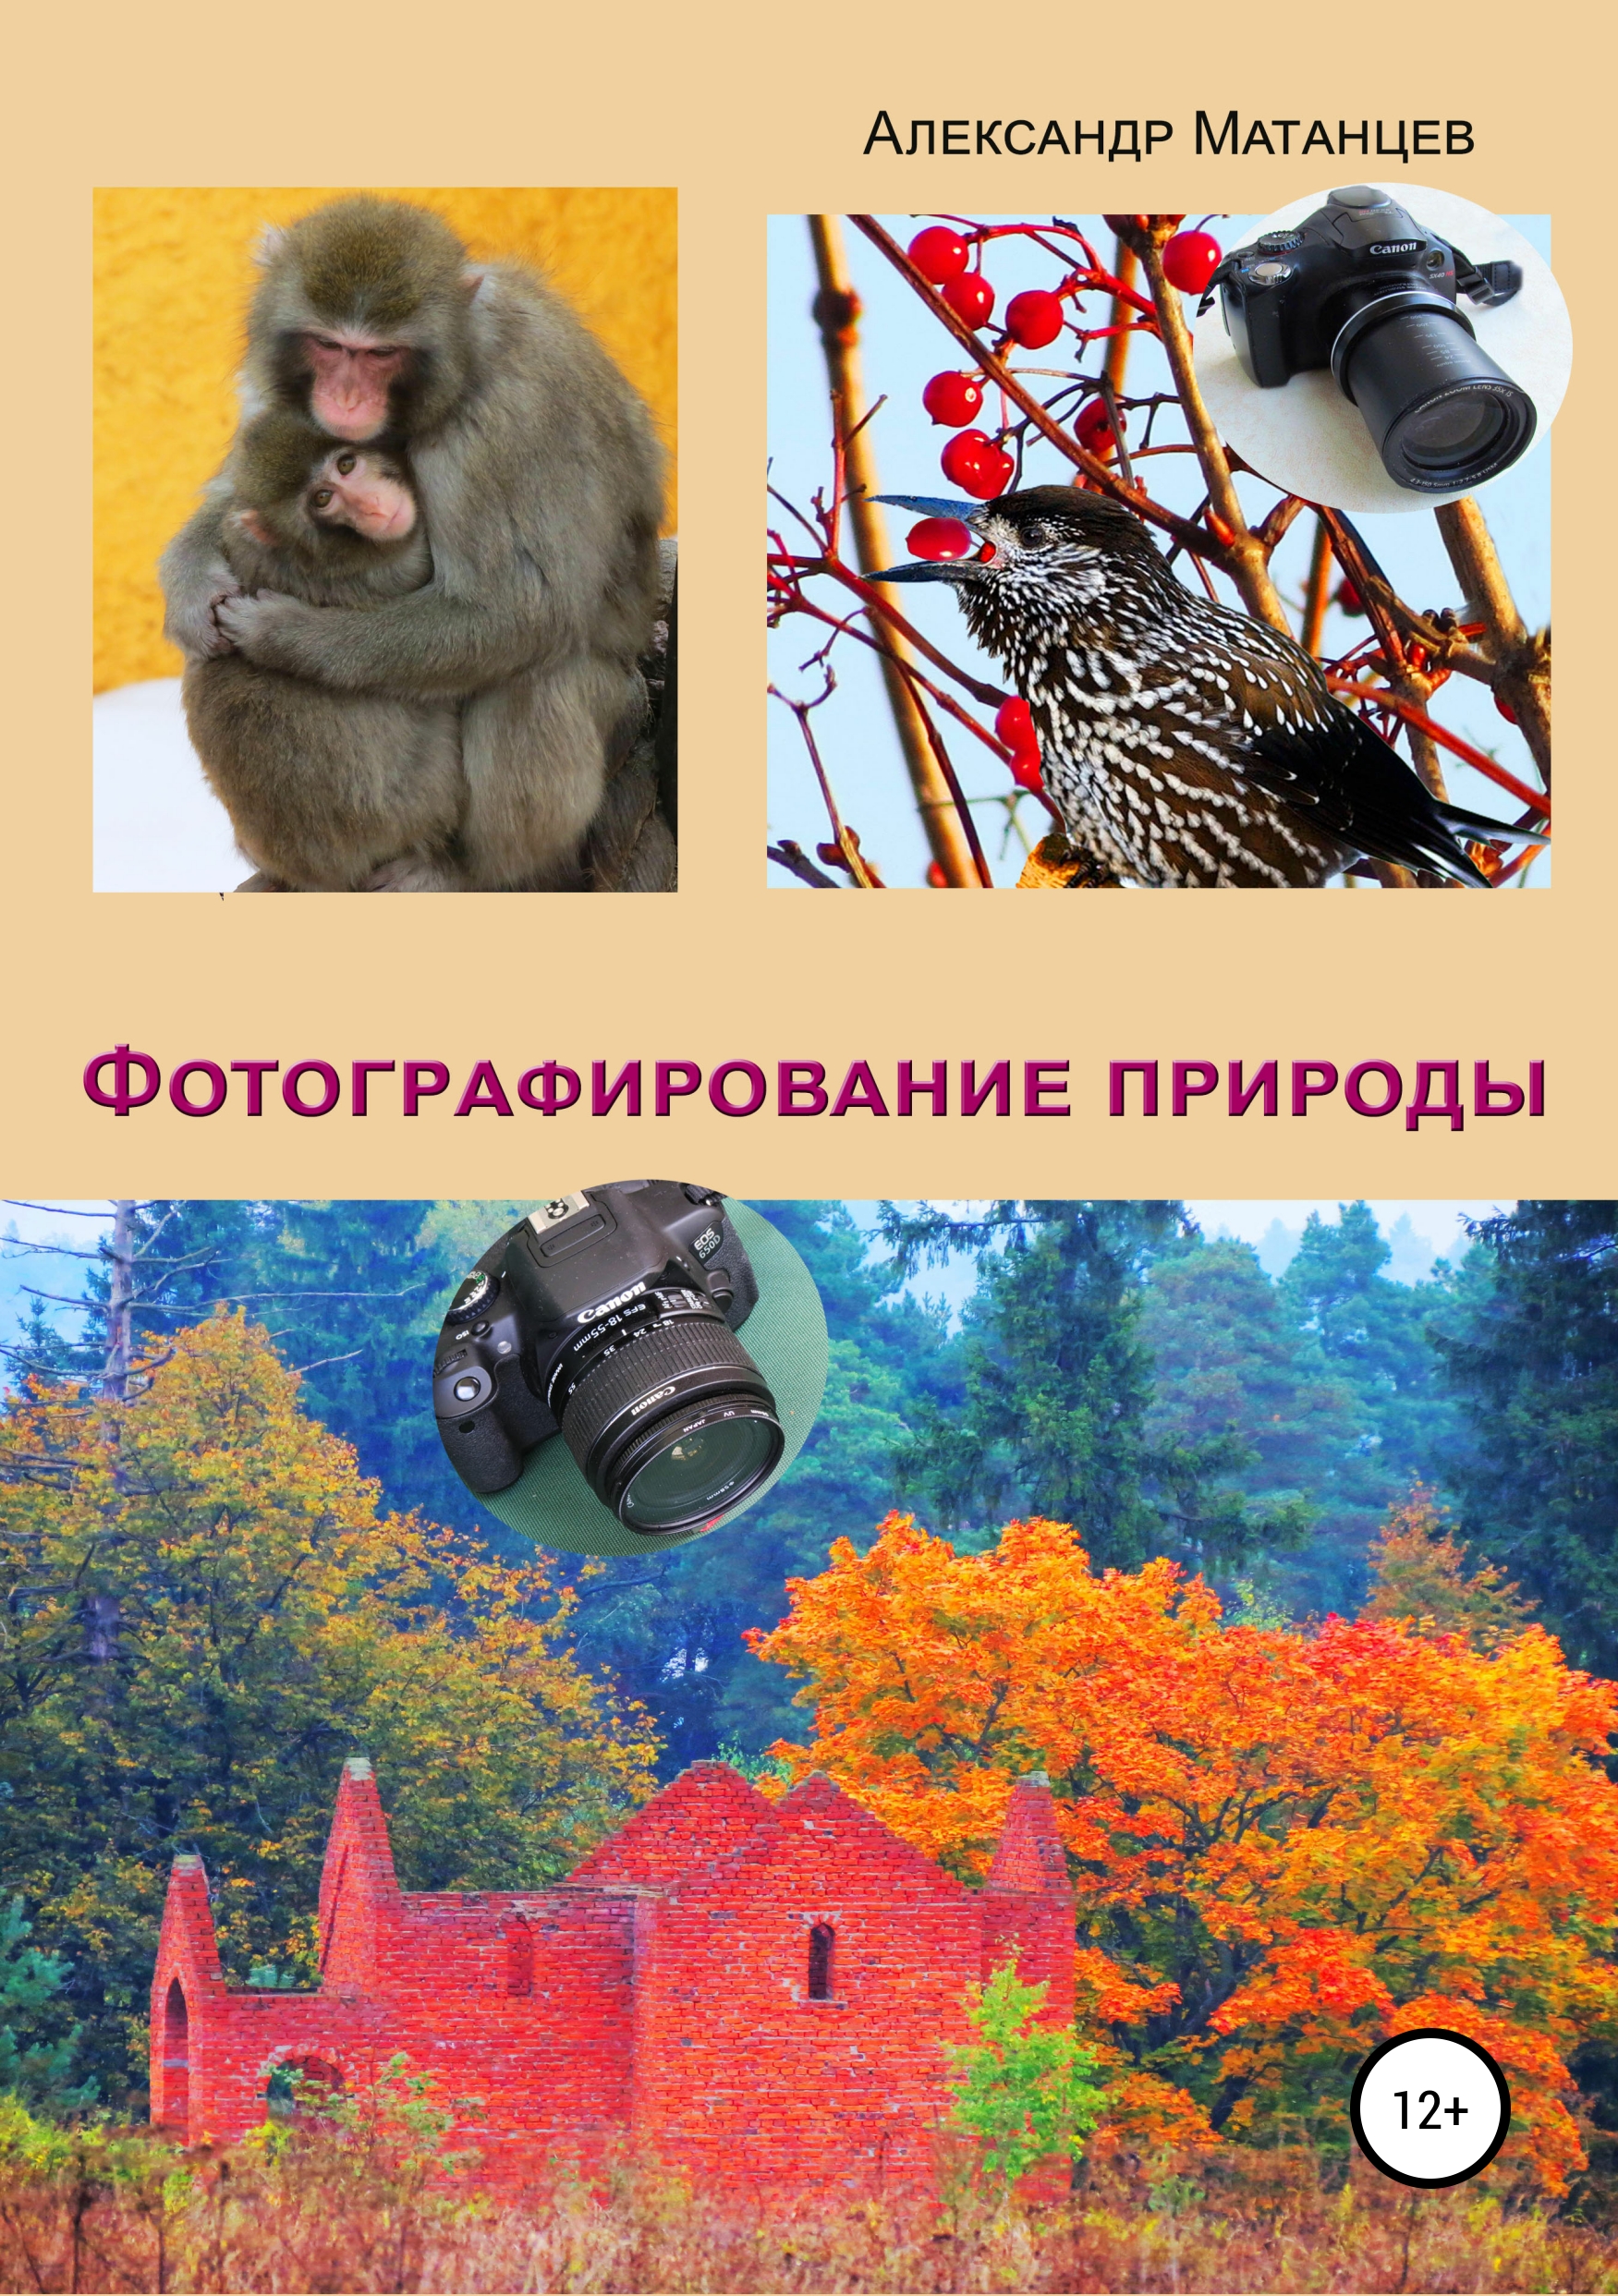 Книга Фотографирование природы из серии , созданная Александр Матанцев, может относится к жанру Изобразительное искусство, фотография, Природа и животные. Стоимость книги Фотографирование природы  с идентификатором 39824421 составляет 249.00 руб.